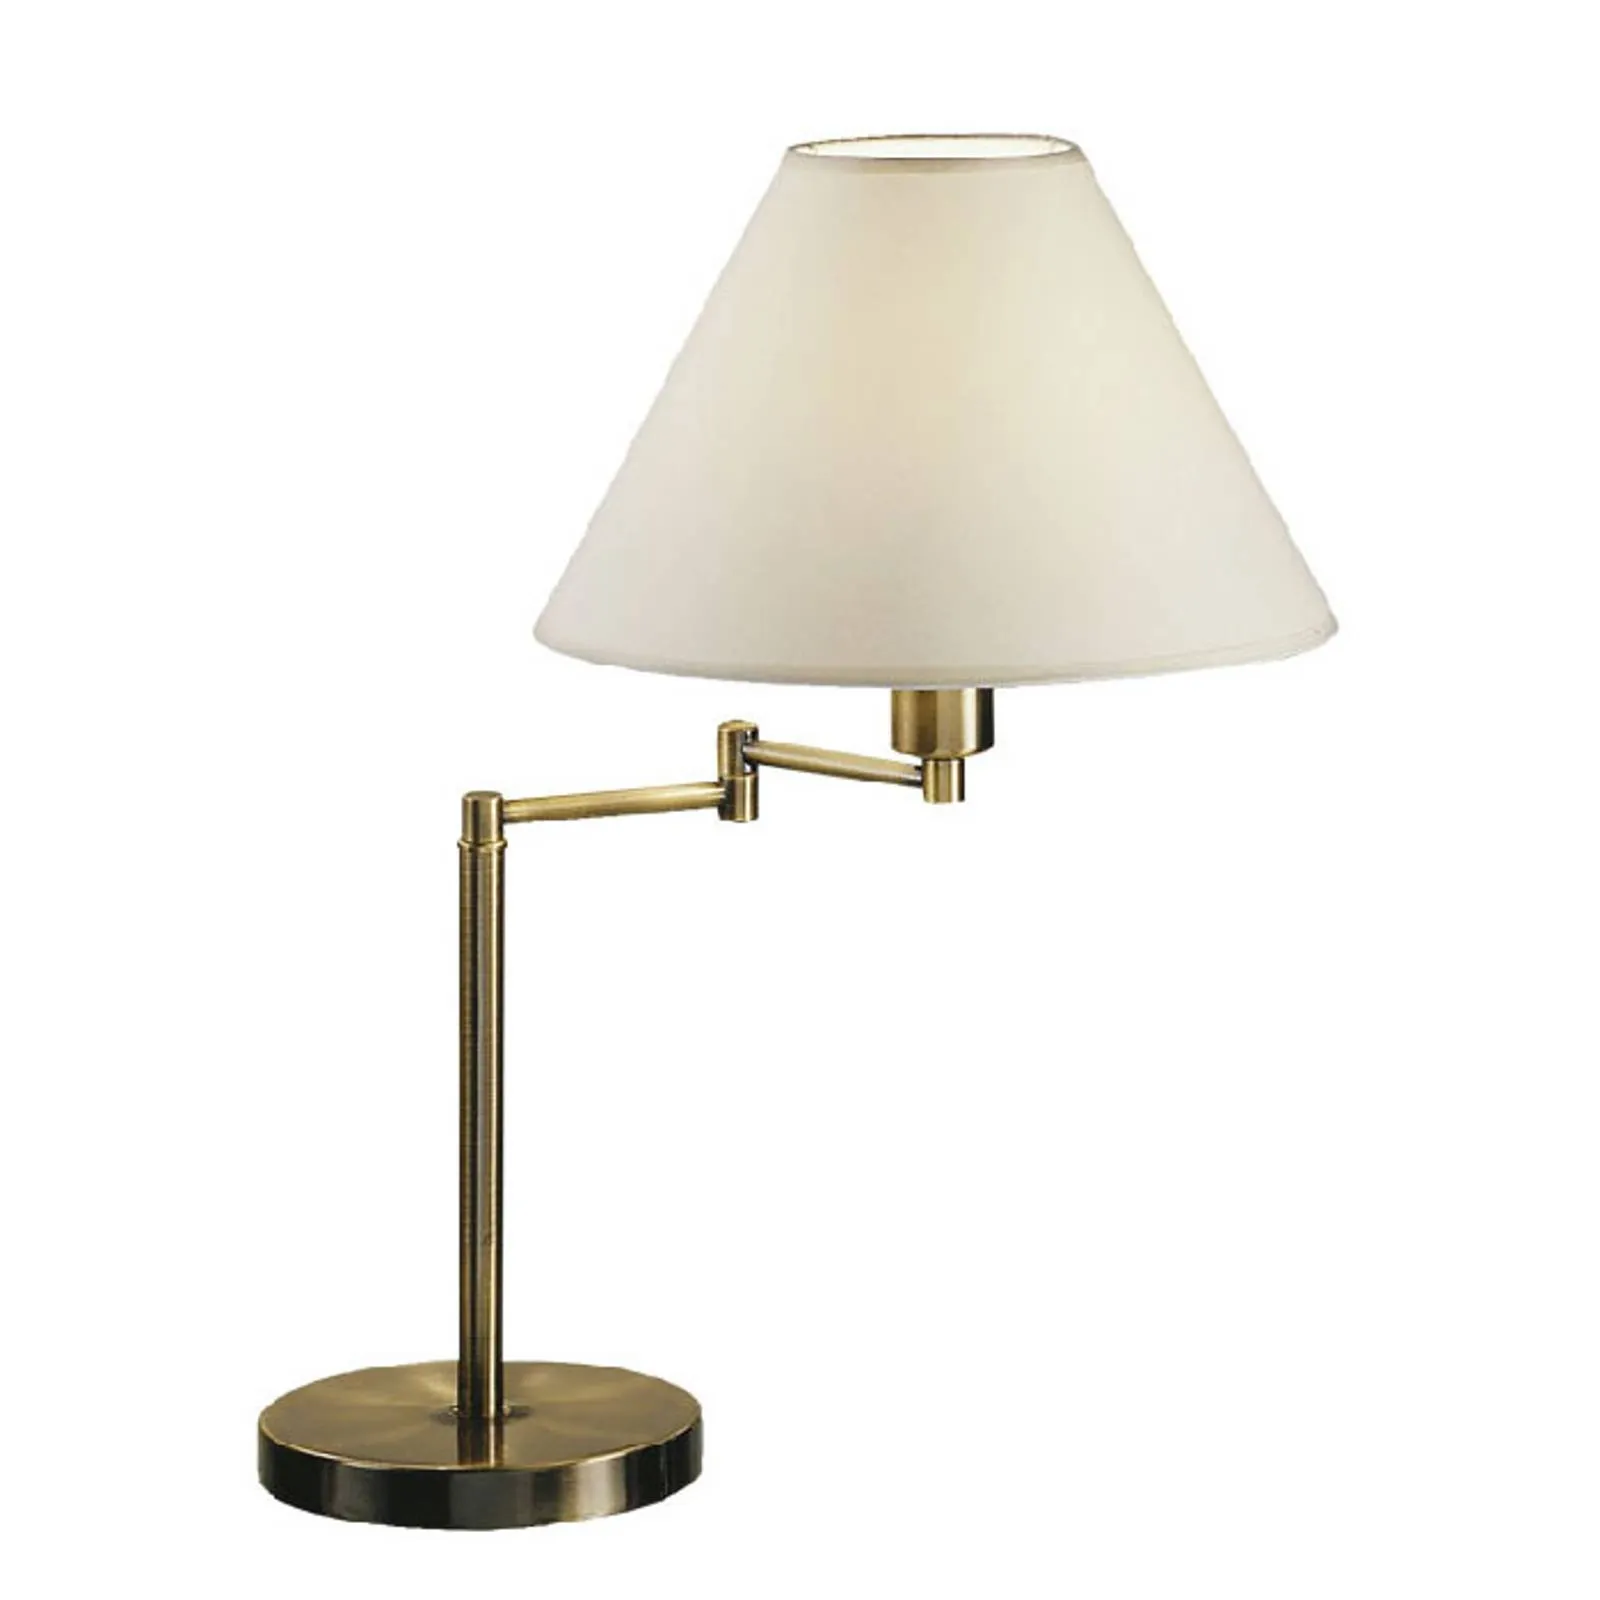 Hilton table lamp, pivotable, antique brass